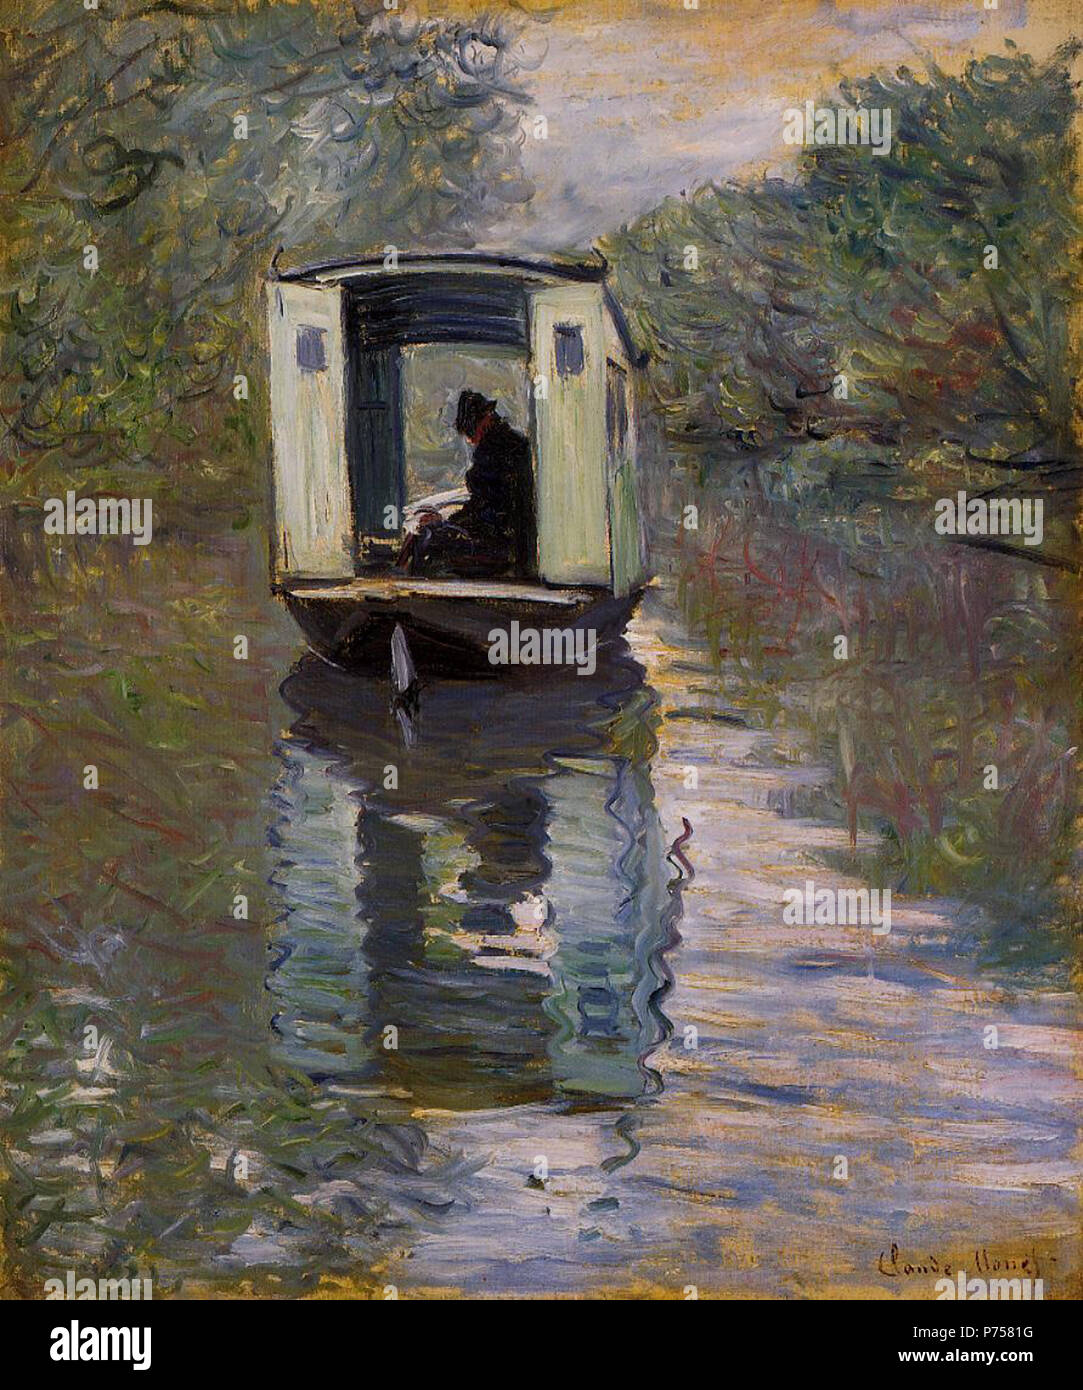 . Le bateau atelier 1876 28 Claude Monet Le bateau atelier Foto de stock